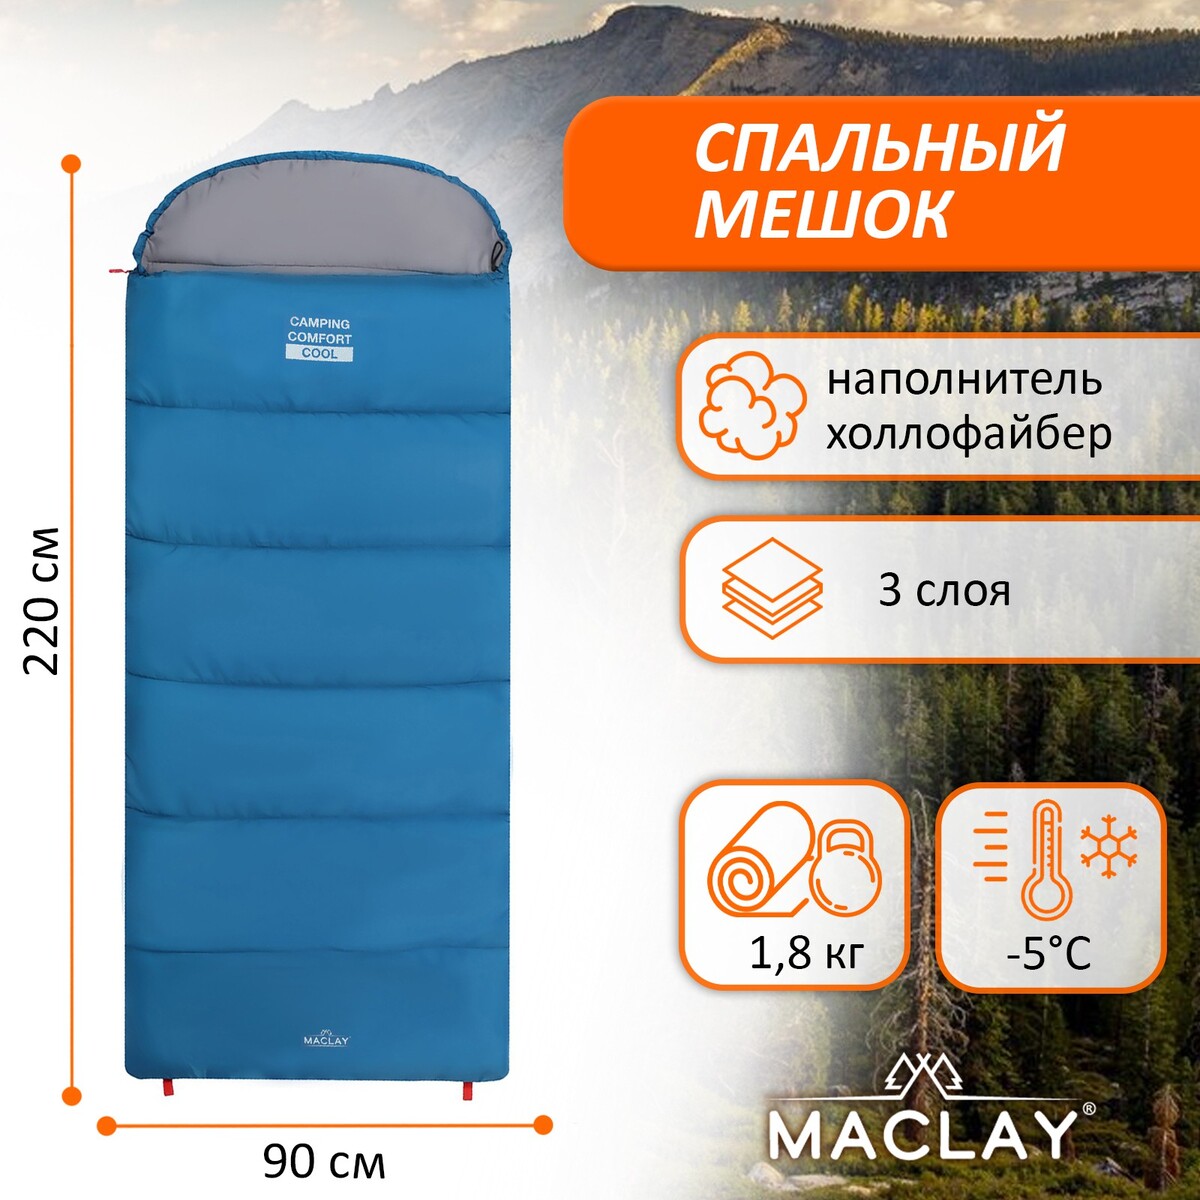 Спальный мешок maclay camping comfort cool, 3-слойный, правый, 220х90 см, -5/+10°с спальник одеяло maclay camping comfort cold 4 слойный левый 220х90 см 10 5°с